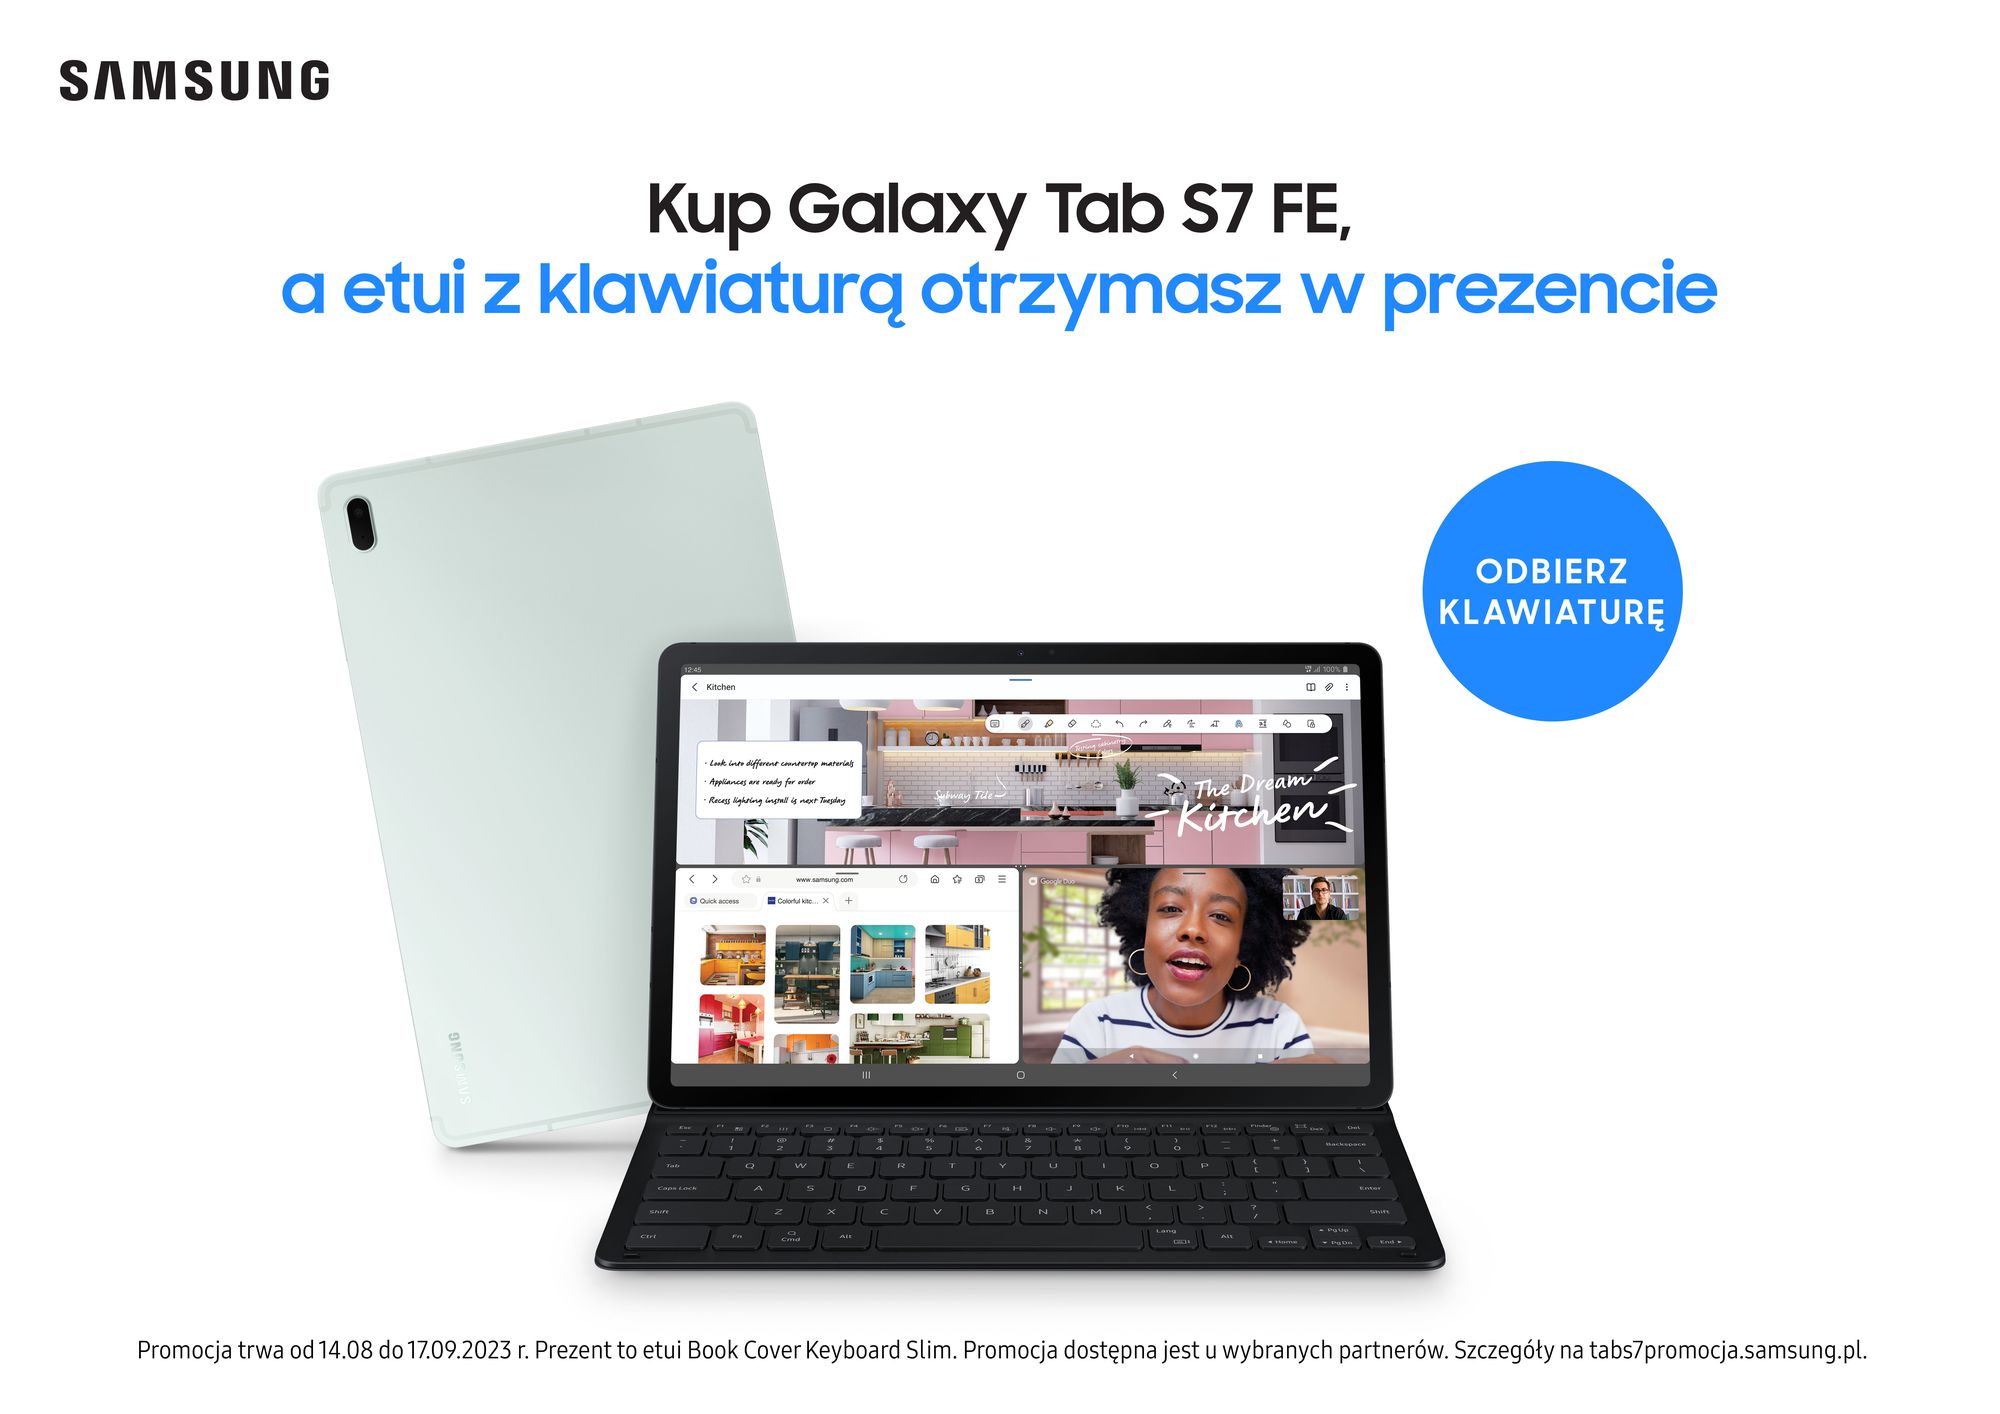 Kup tablet Galaxy Tab S7 FE i otrzymaj etui Book Cover Keyboard Slim w prezencie